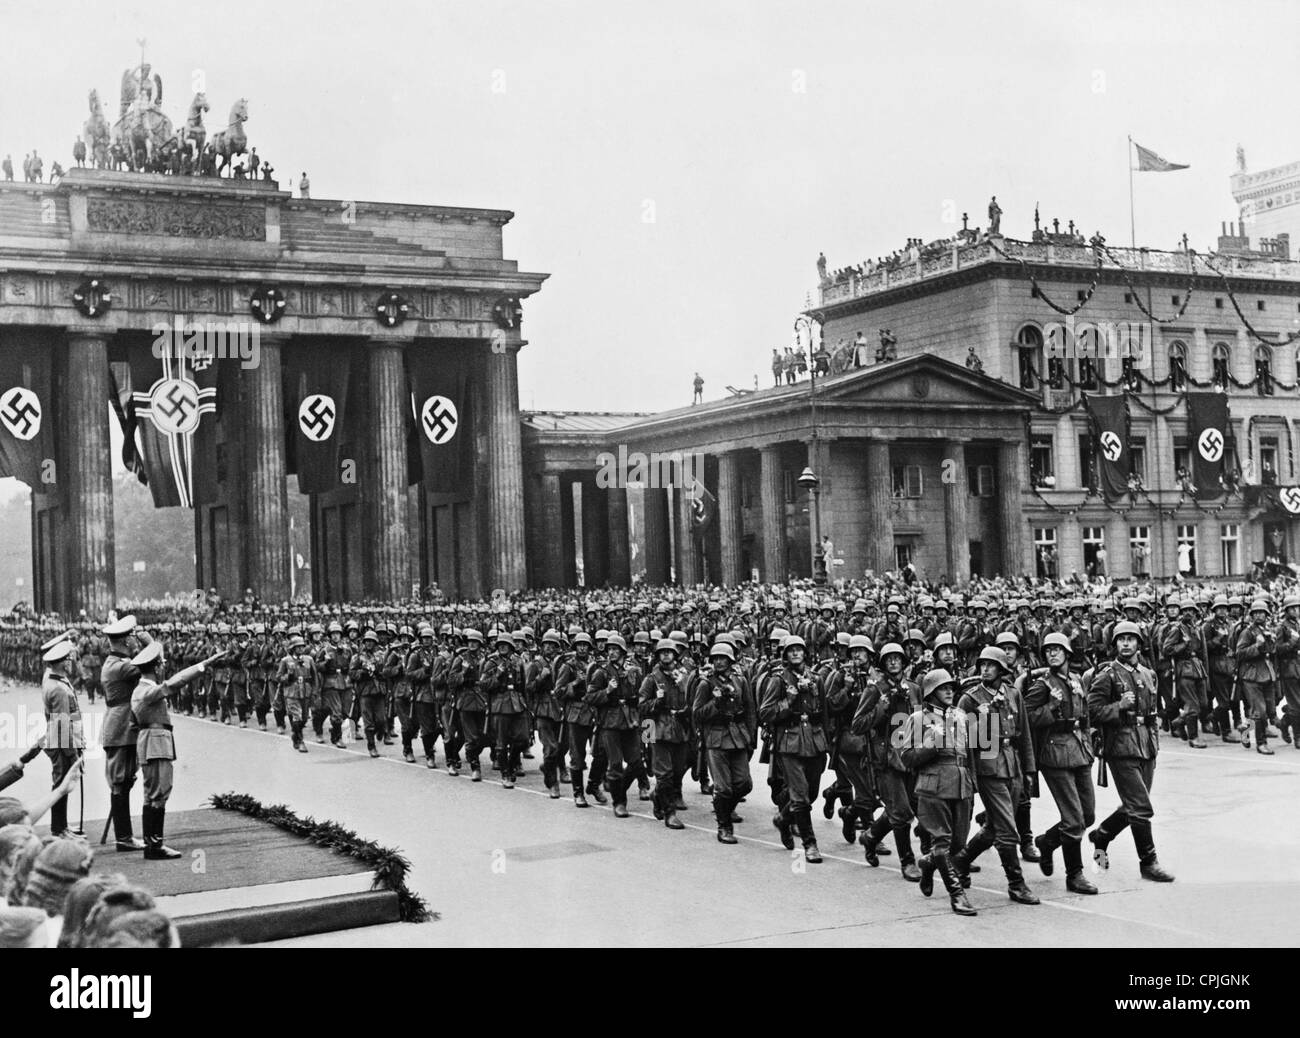 La revue de la victoire de la Wehrmacht à Berlin, 1940 Banque D'Images